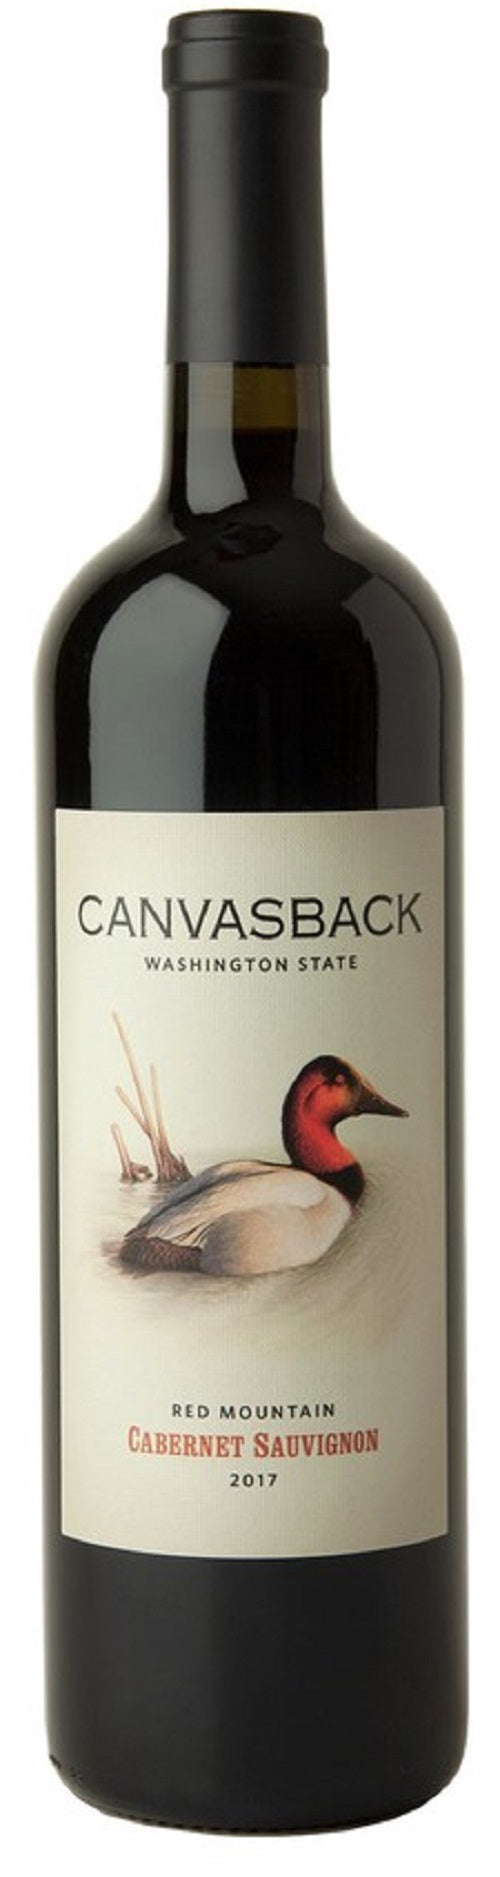 Canvasback Cabernet Sauvignon 2017